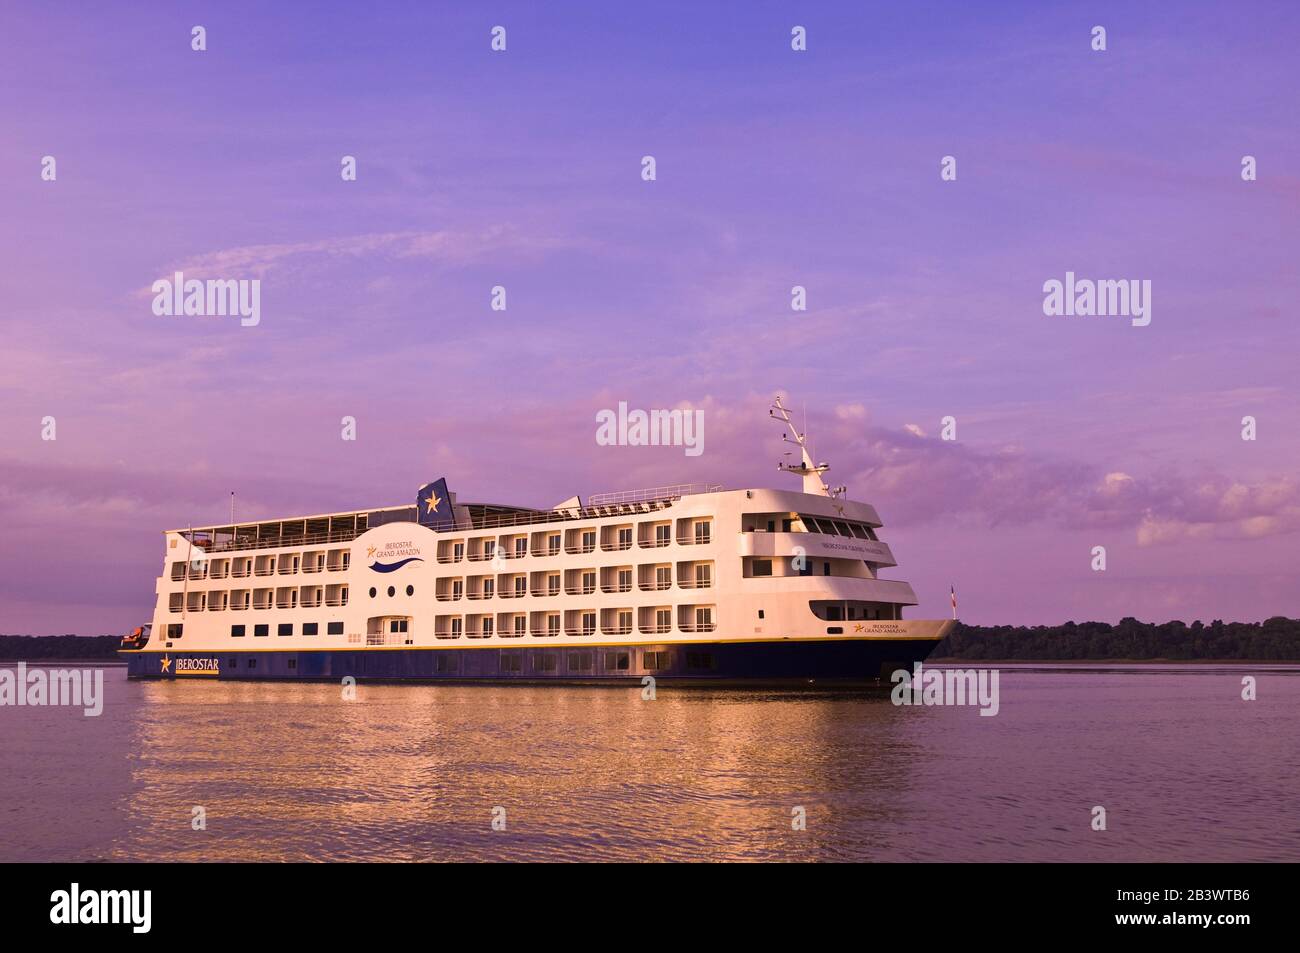 Luxus kreuzfahrtschiff -Fotos und -Bildmaterial in hoher Auflösung – Alamy